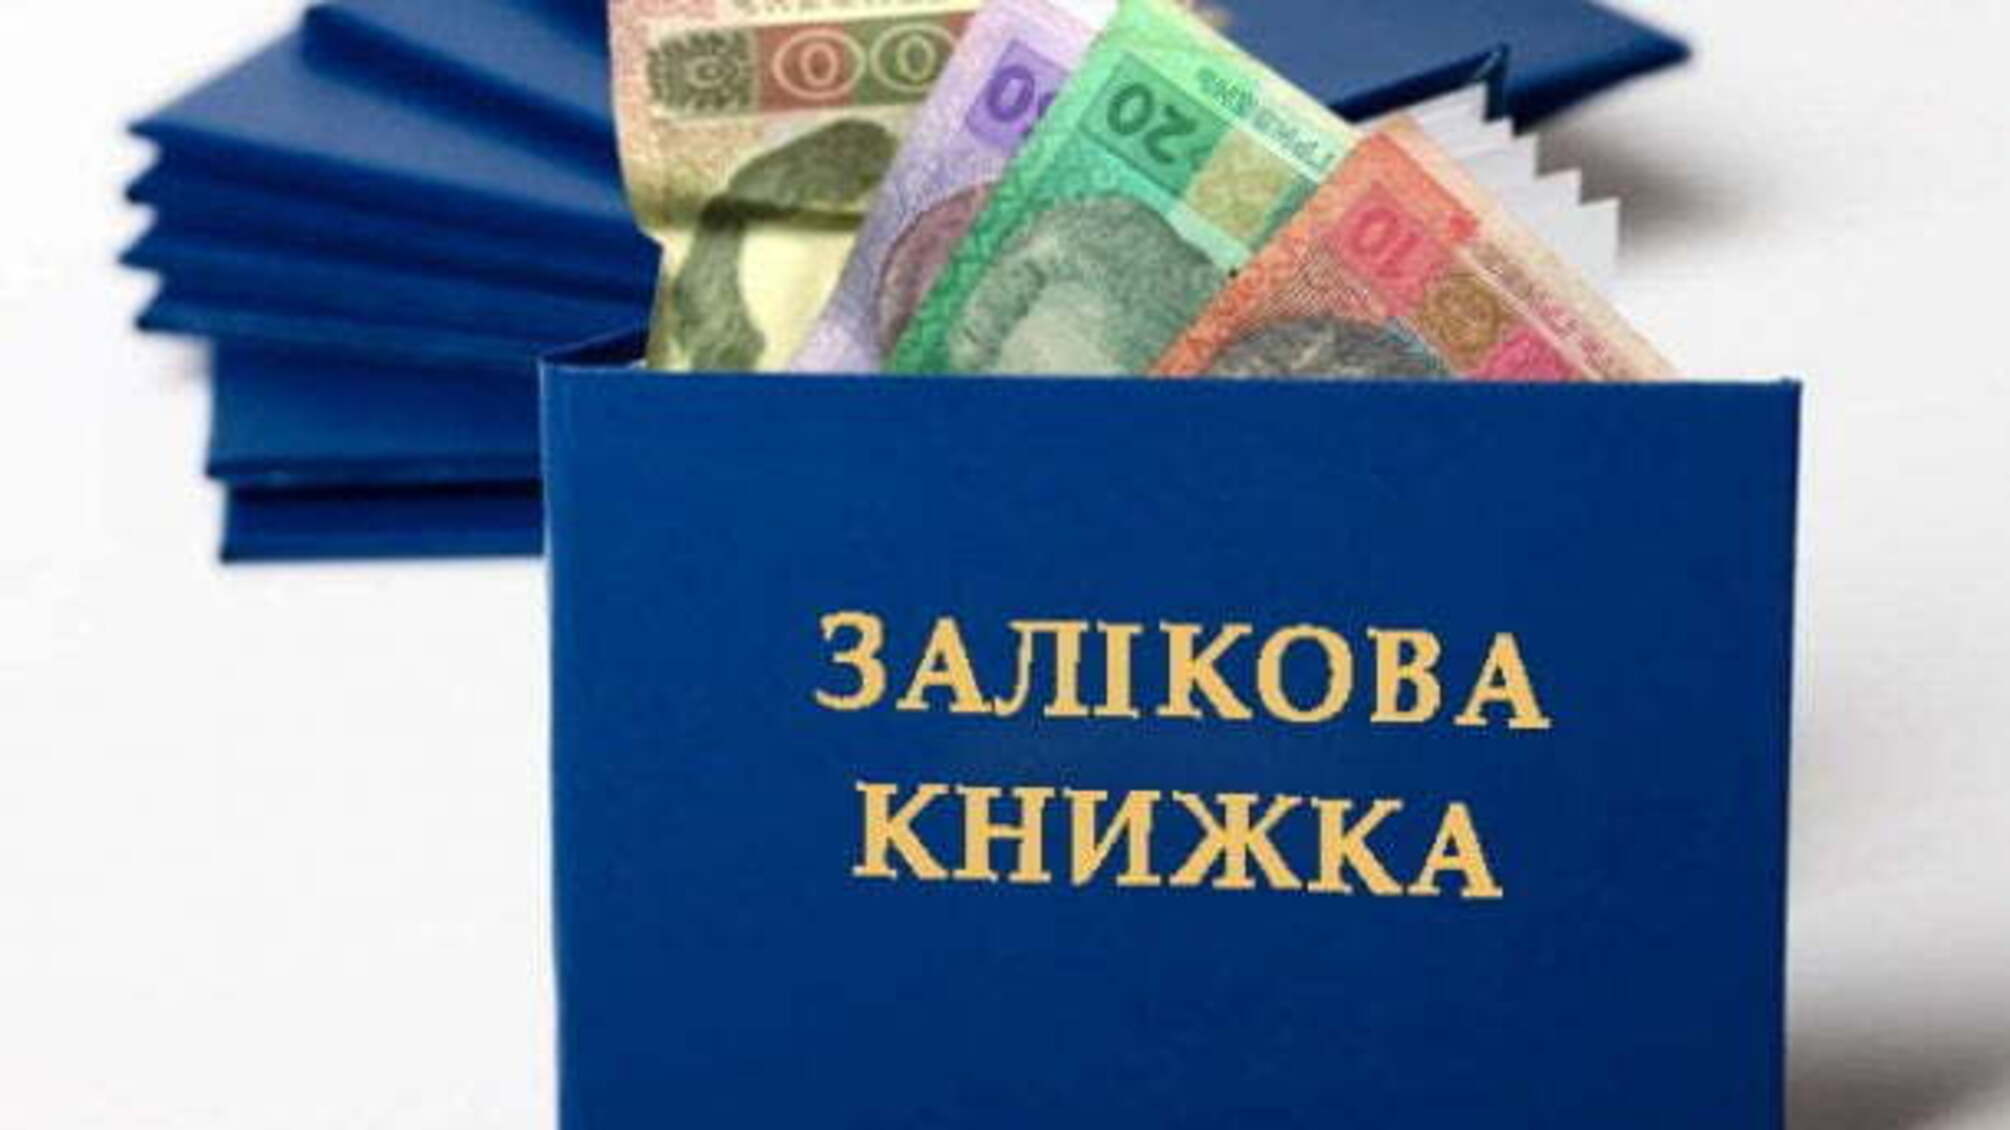 Експерти назвали найбільш корумповані виші України